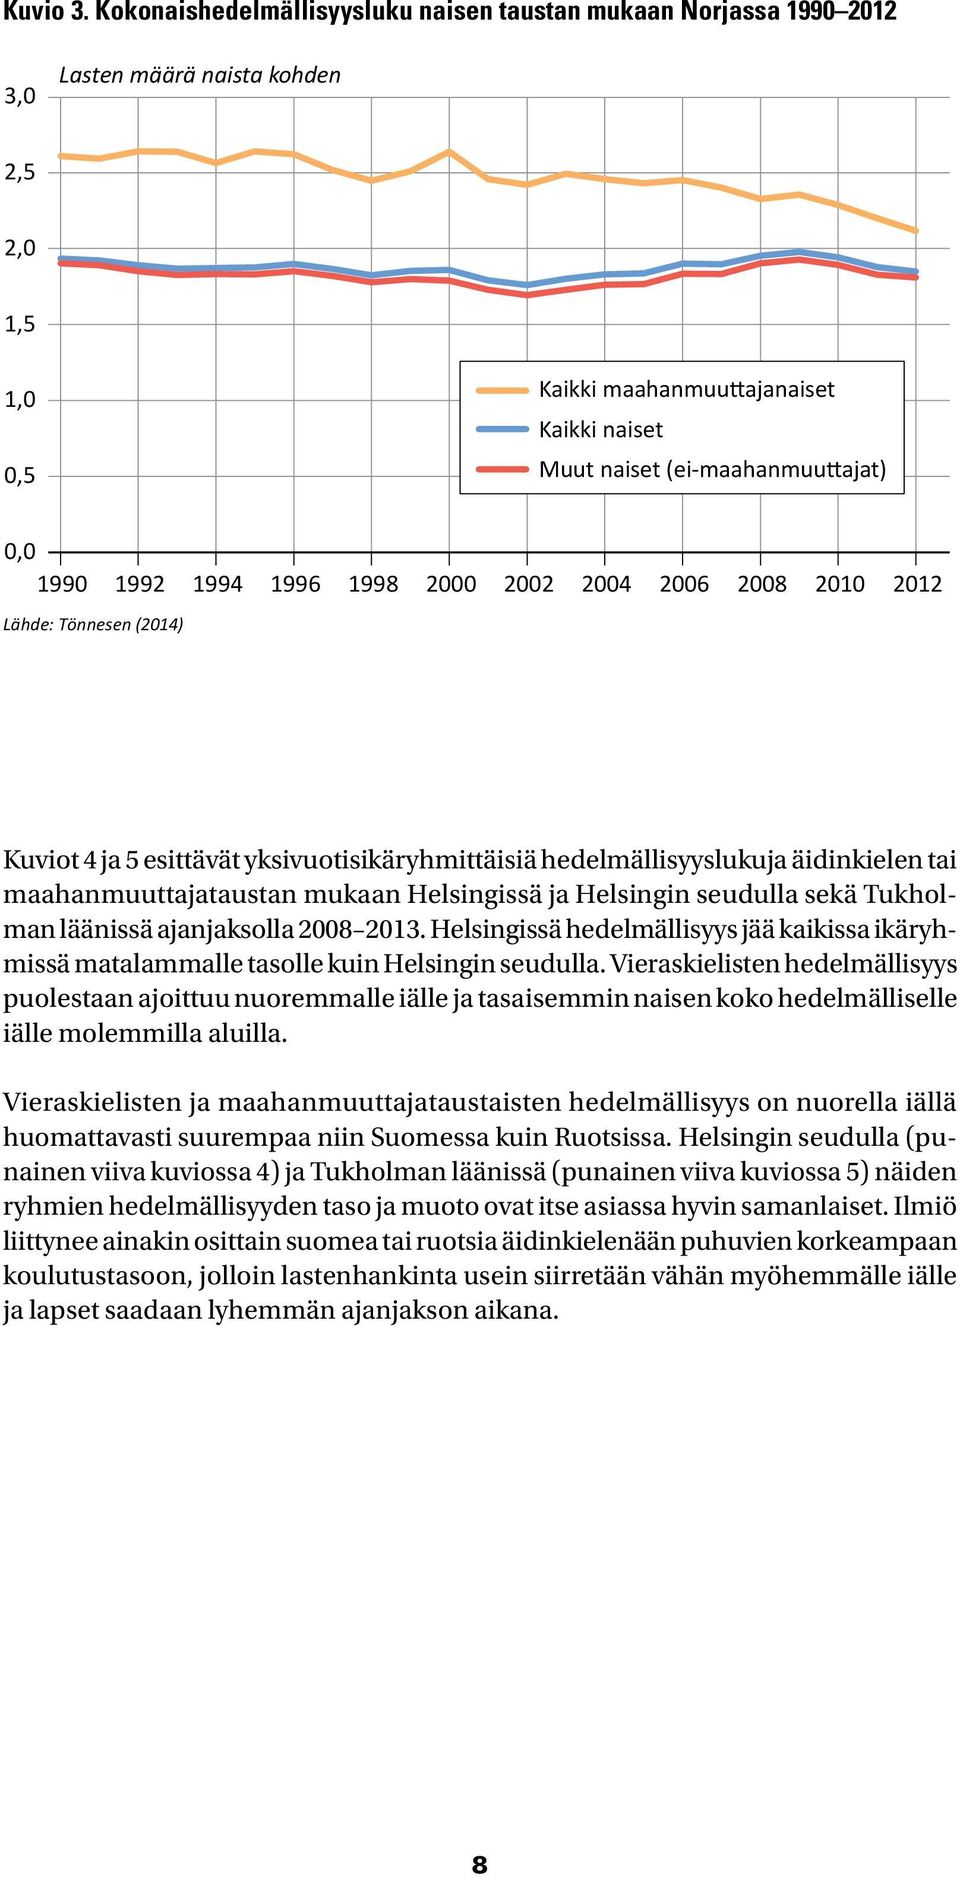 Tönnesen (14) Kuviot 4 ja 5 esittävät yksivuotisikäryhmittäisiä hedelmällisyyslukuja äidinkielen tai maahanmuuttajataustan mukaan Helsingissä ja Helsingin seudulla sekä Tukholman läänissä